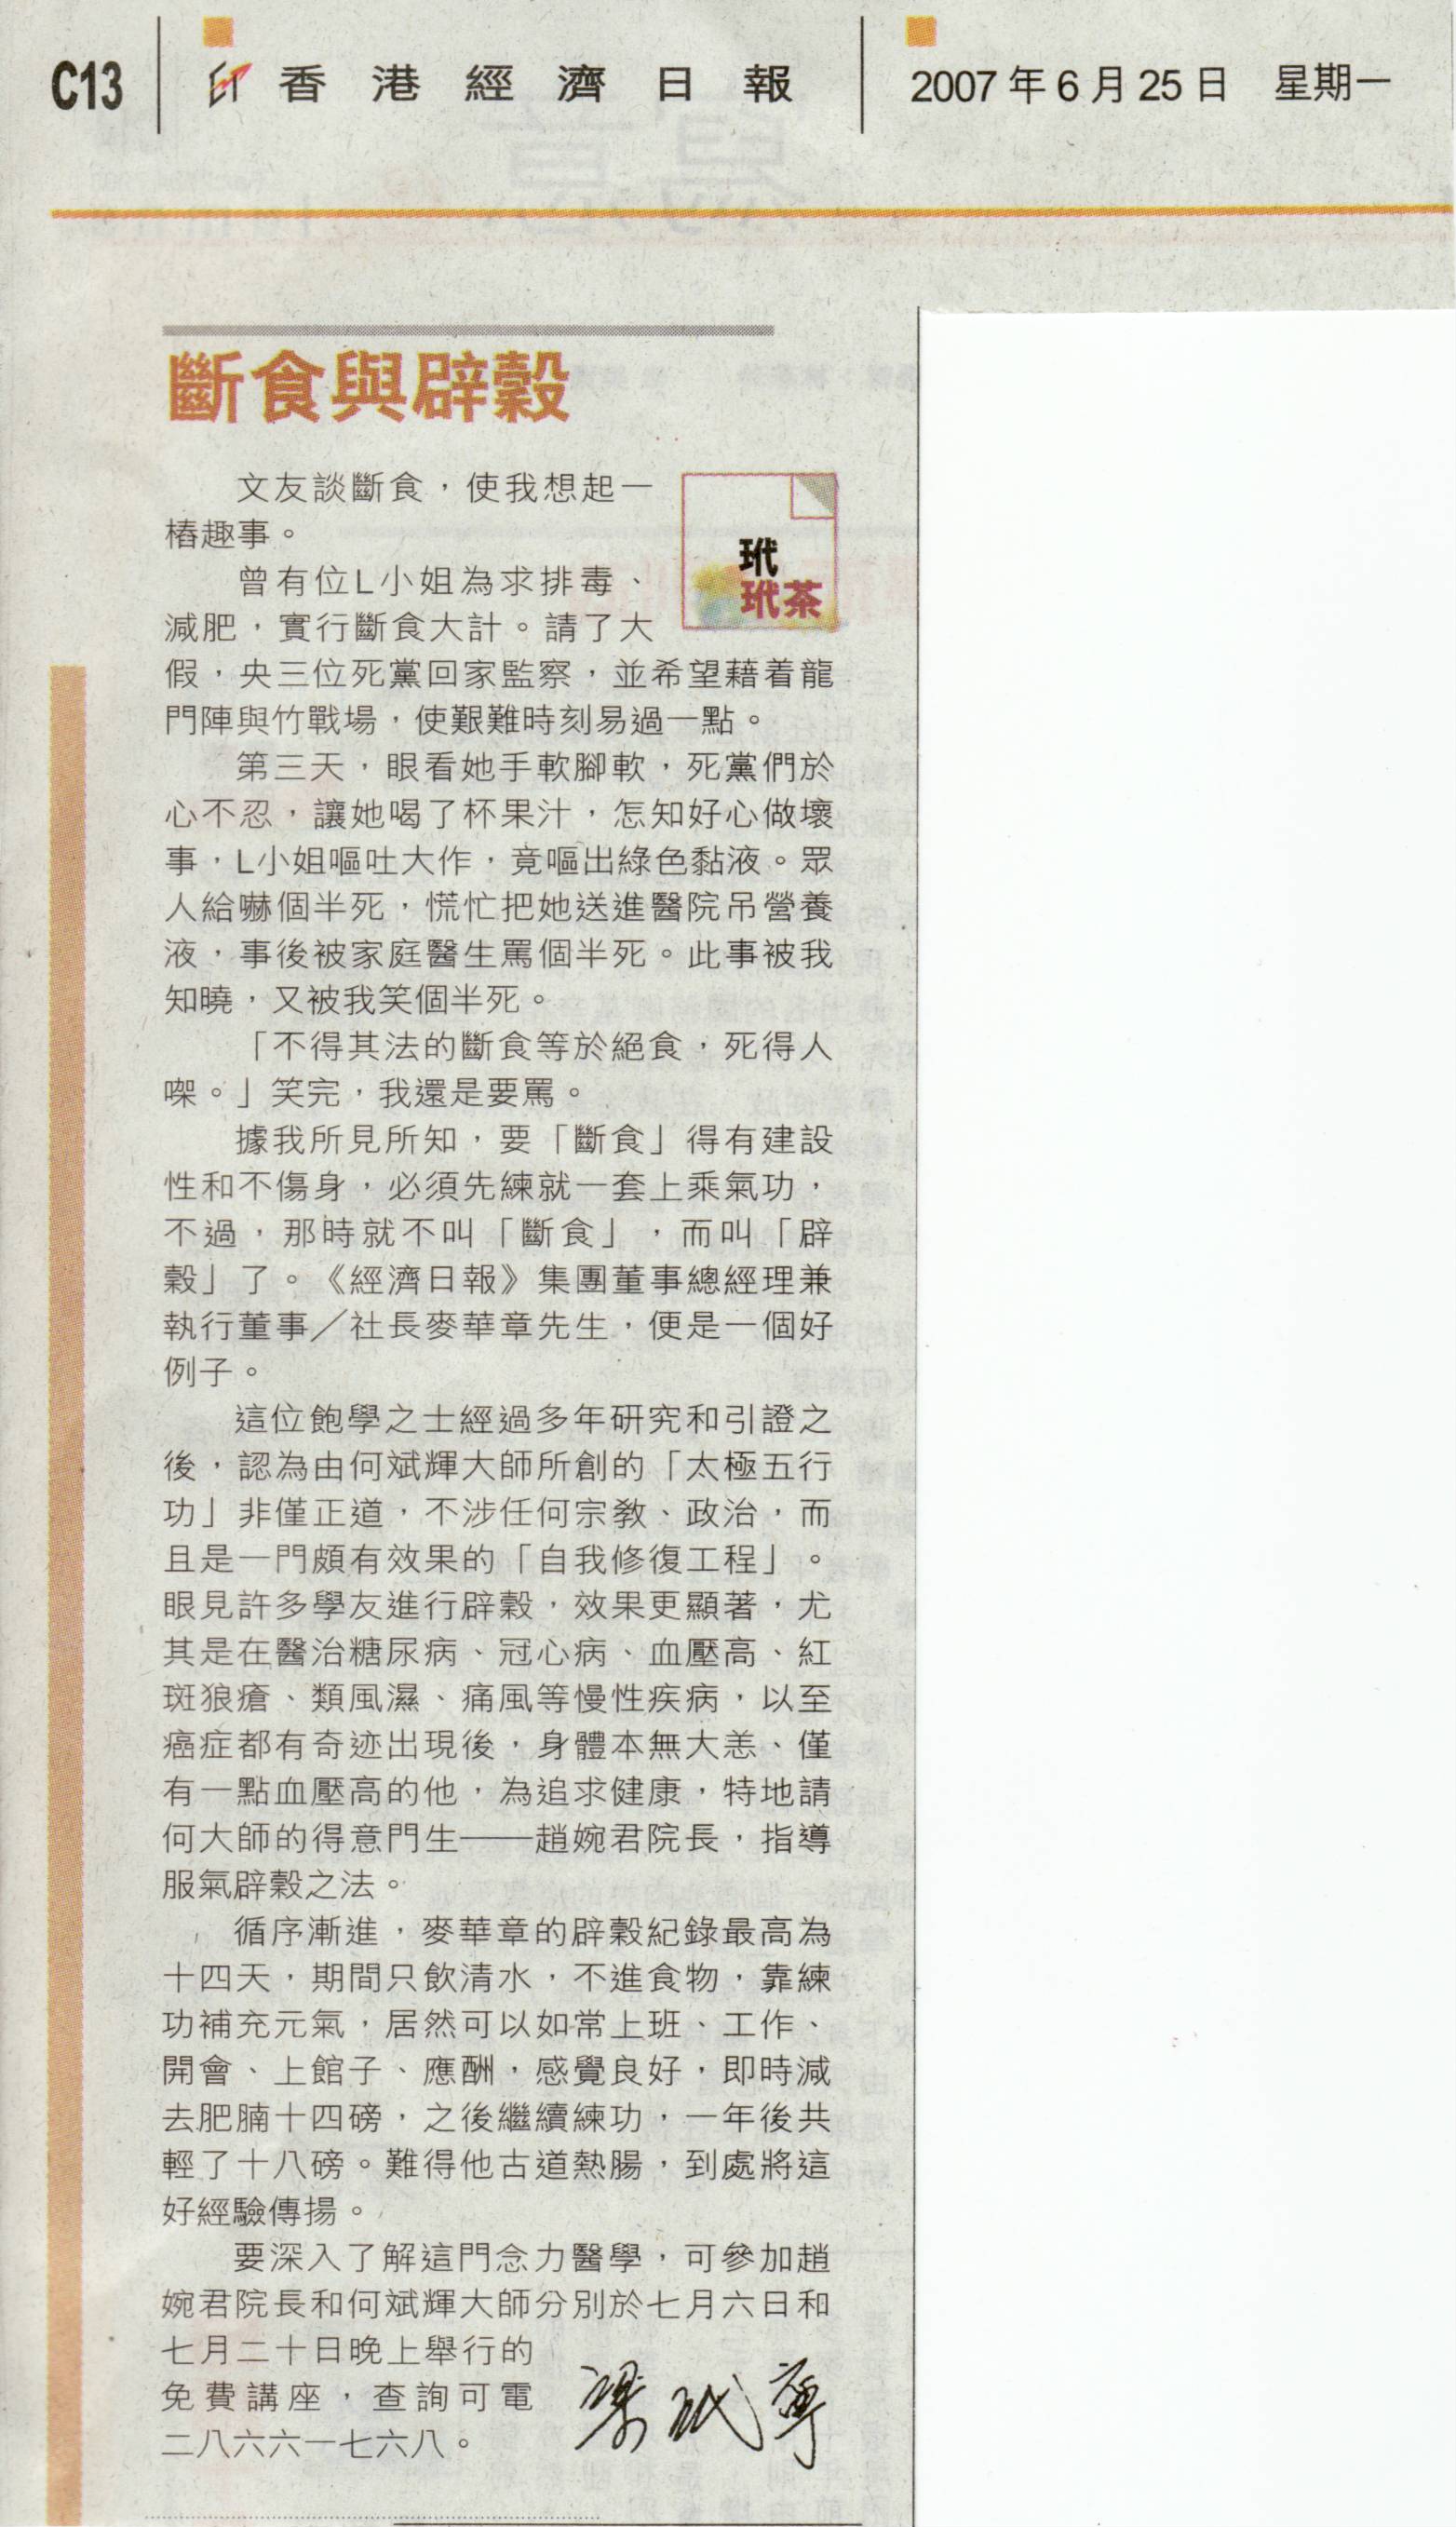 香港經濟日報︰2007年6月25日 (斷食與辟穀)